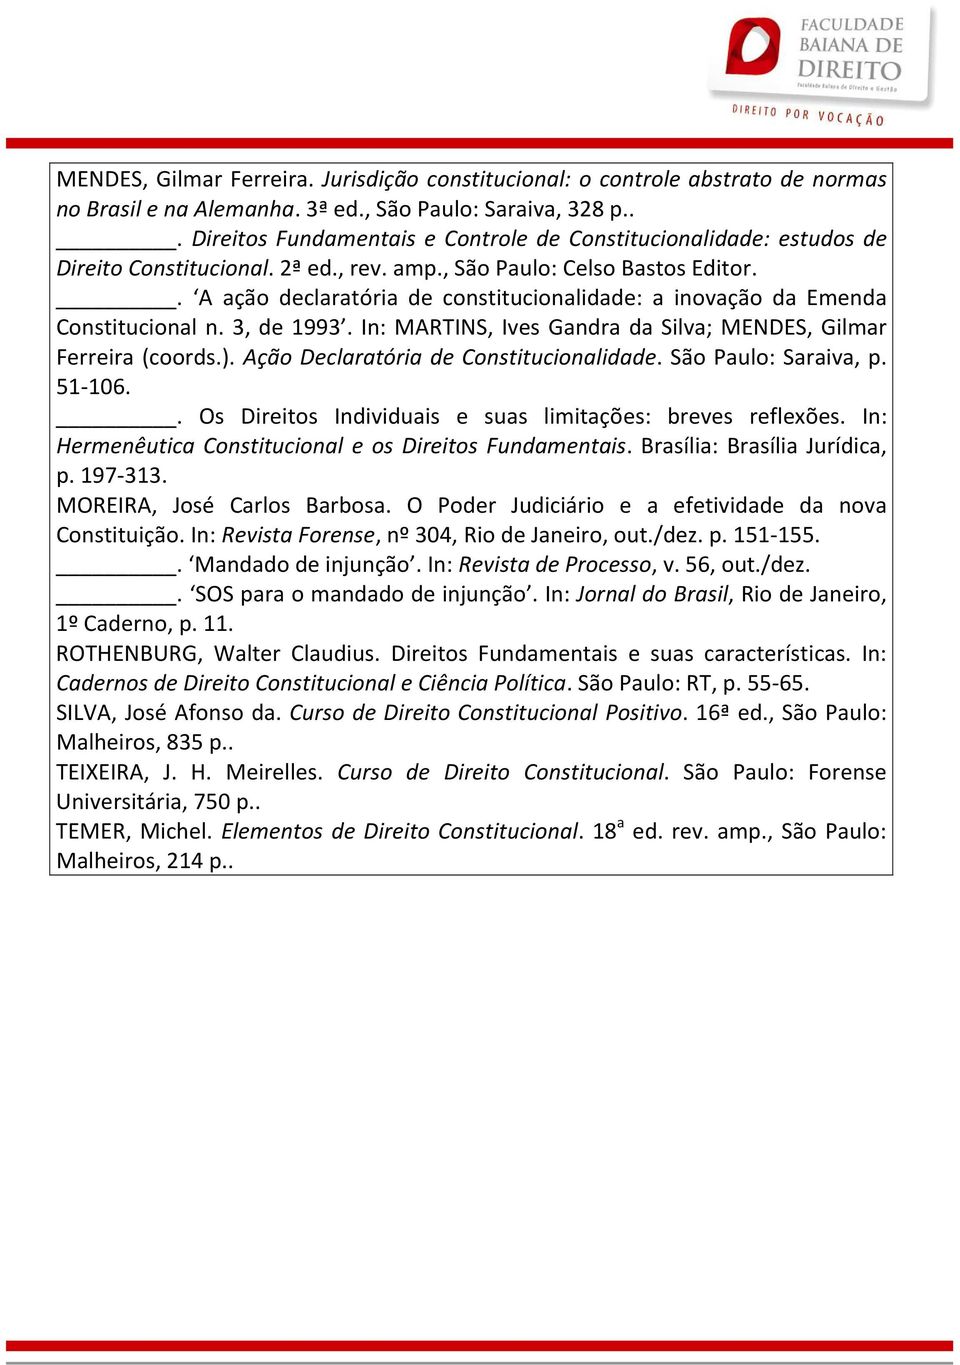 . A ação declaratória de constitucionalidade: a inovação da Emenda Constitucional n. 3, de 1993. In: MARTINS, Ives Gandra da Silva; MENDES, Gilmar Ferreira (coords.).